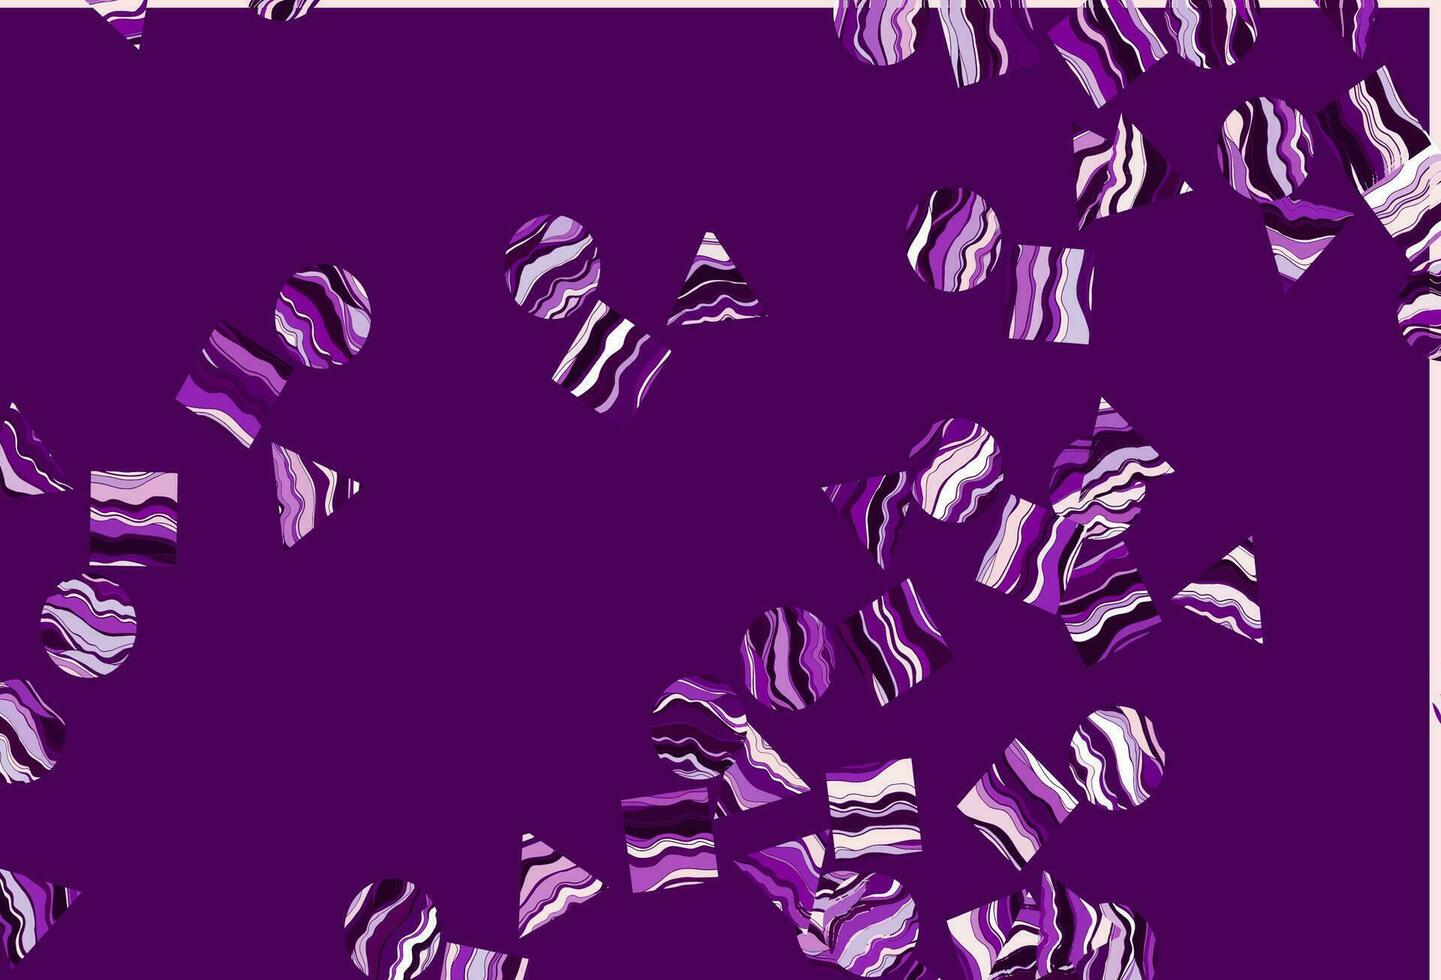 couverture vectorielle violet clair dans un style polygonal avec des cercles. vecteur